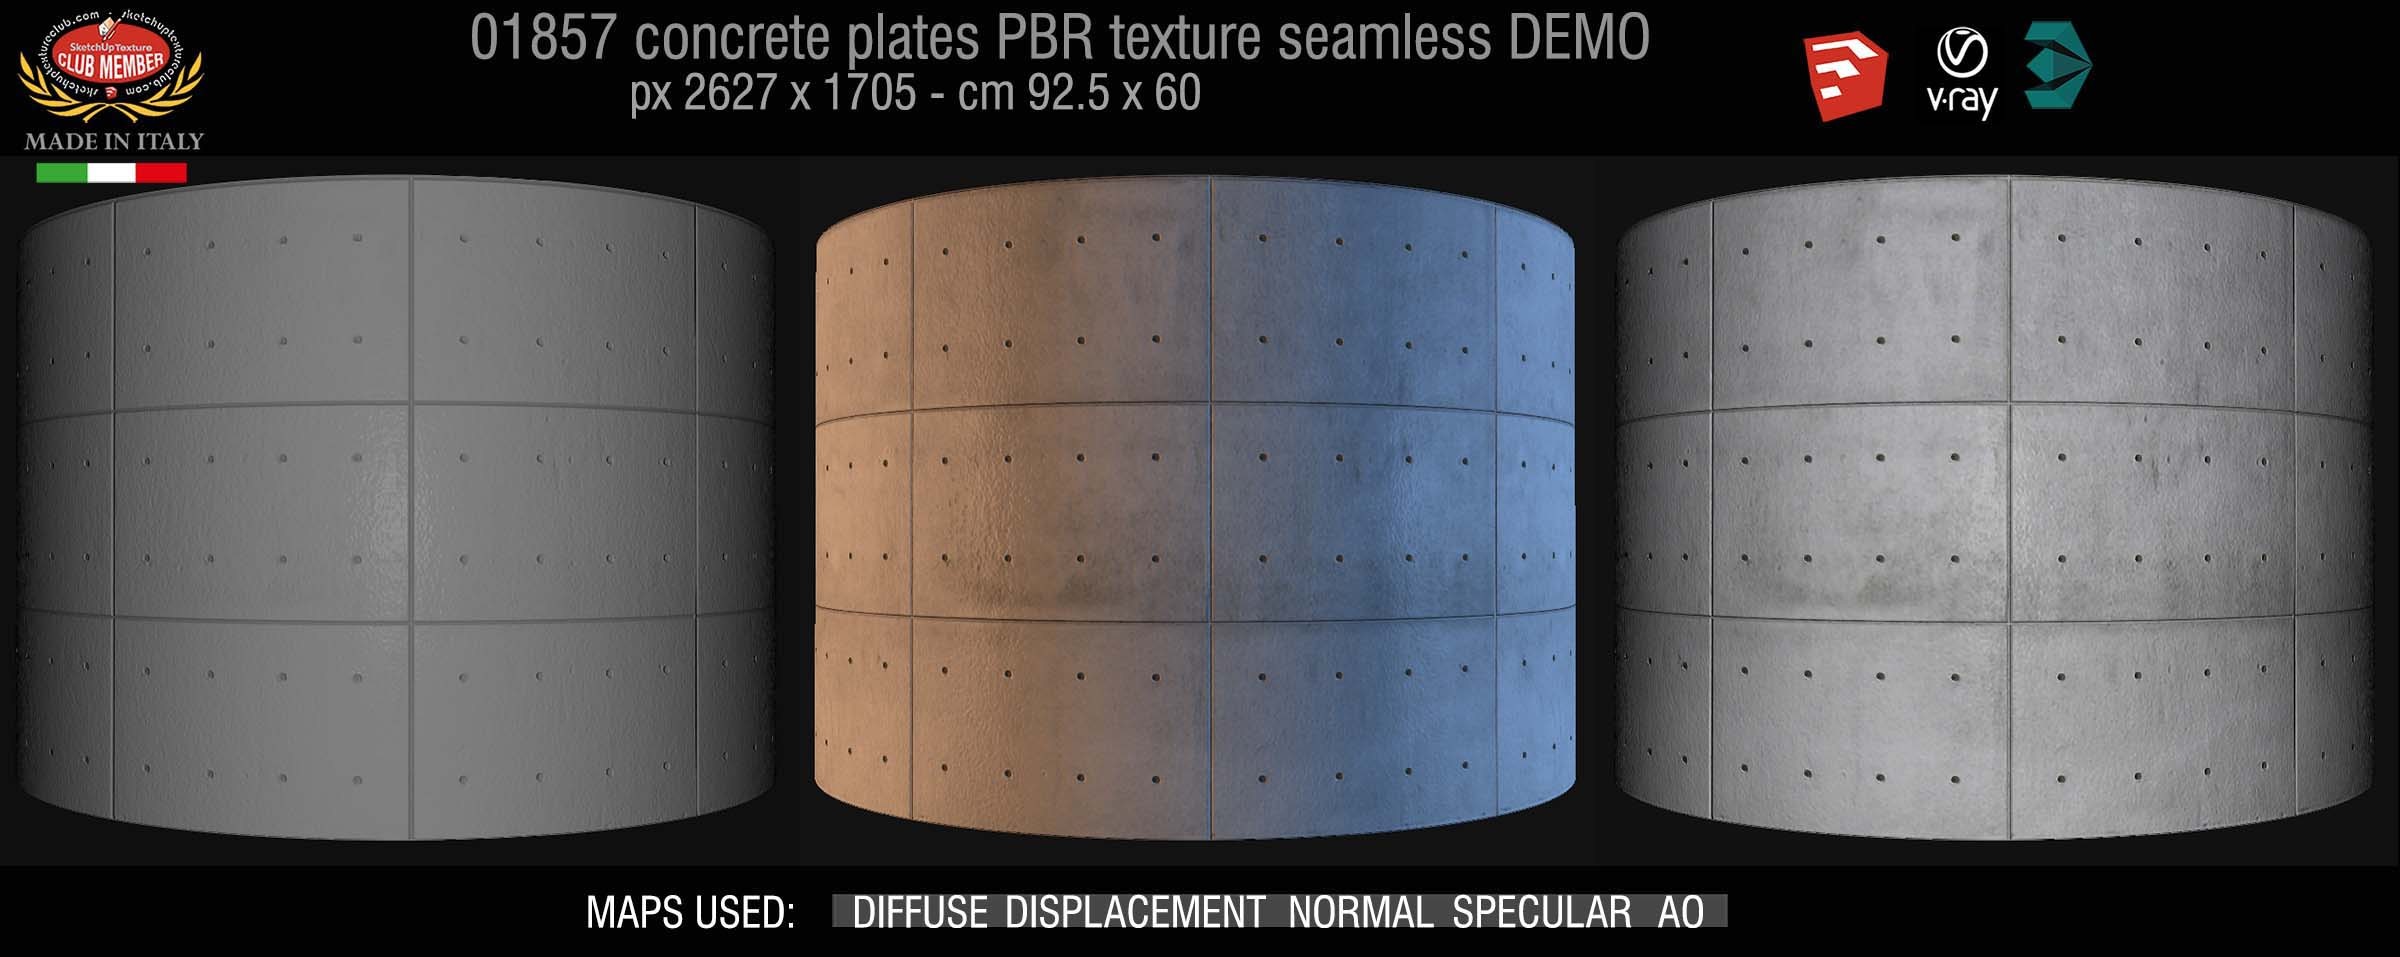 01857 Tadao Ando concrete plates PBR texture seamless DEMO